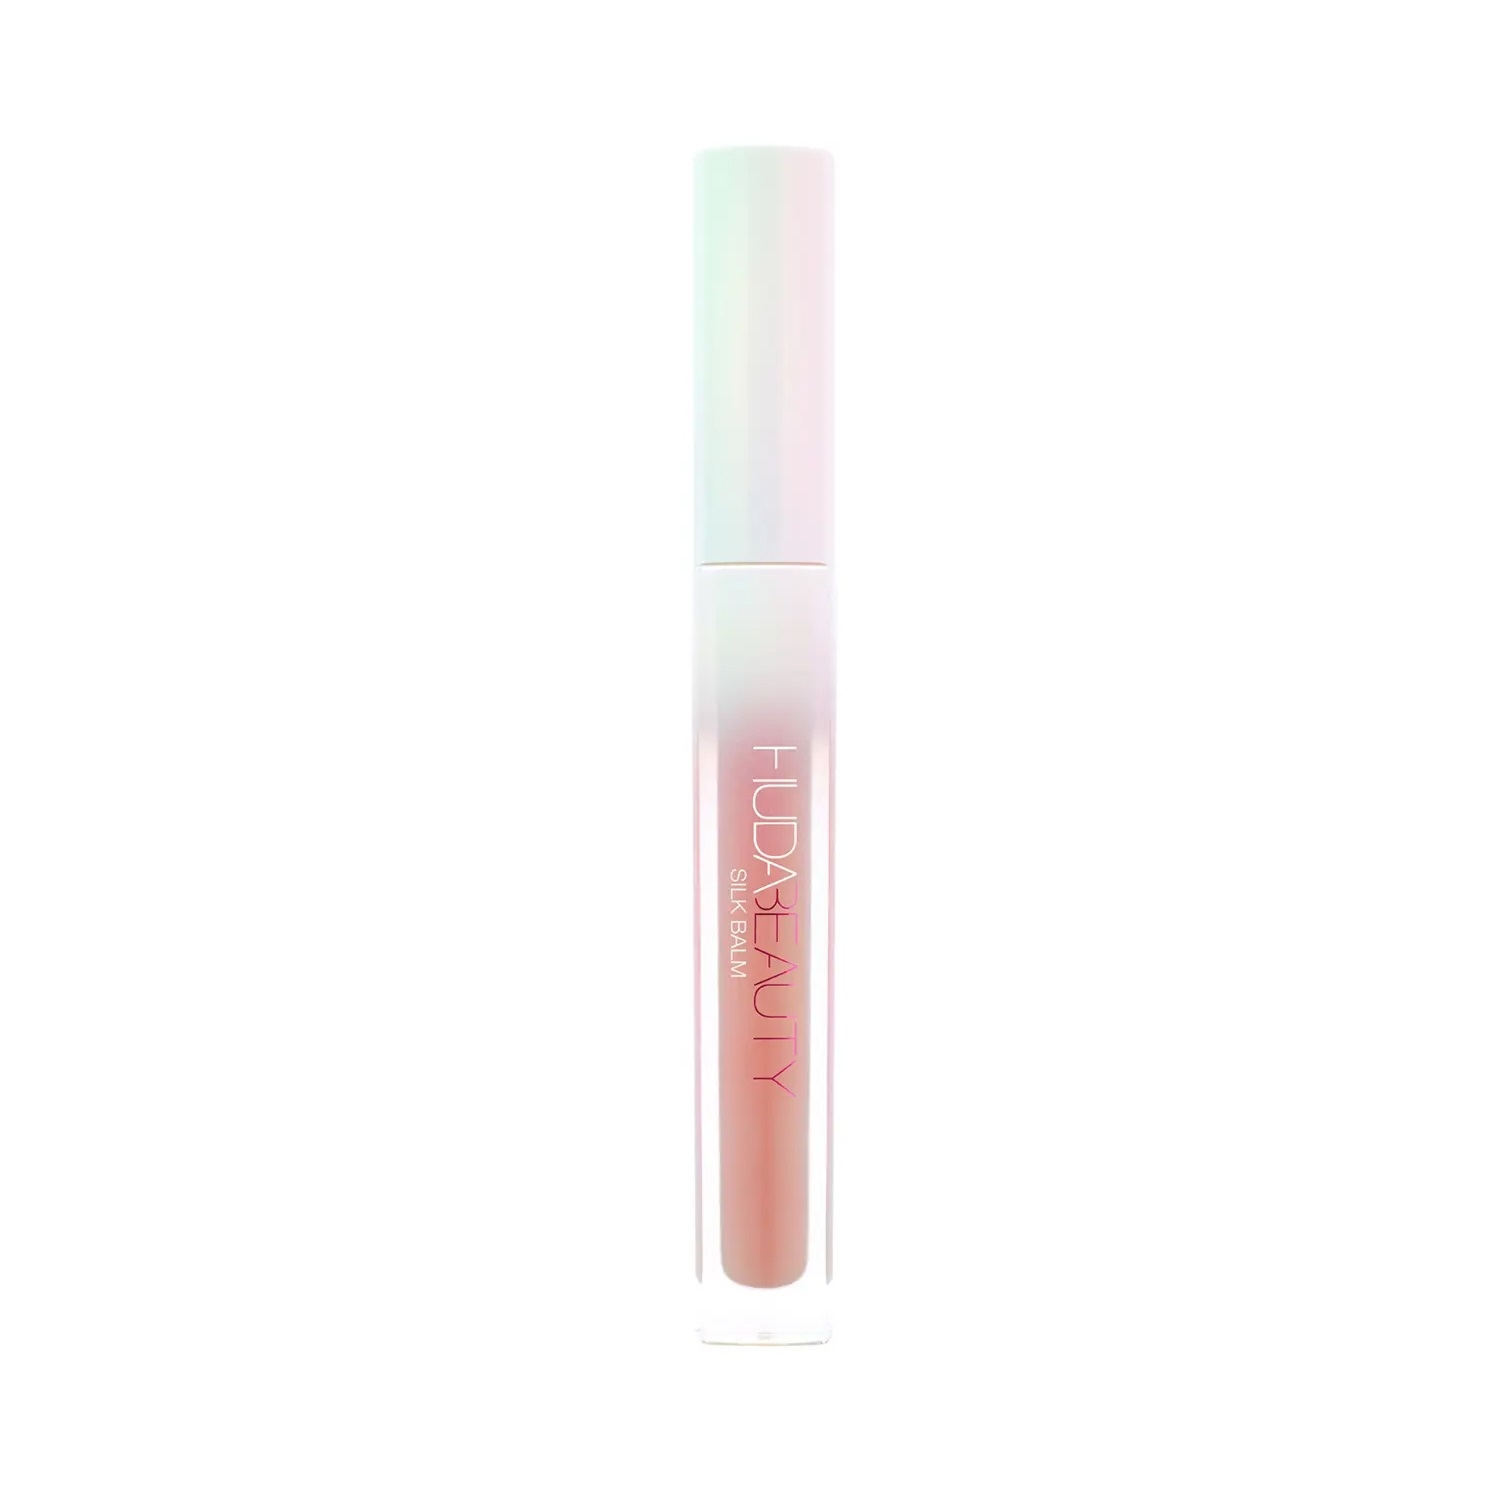 Huda Beauty | Huda Beauty Silk Balm Hydra-Plumping Lip Balm - Universal Blushed Pink (3ml)